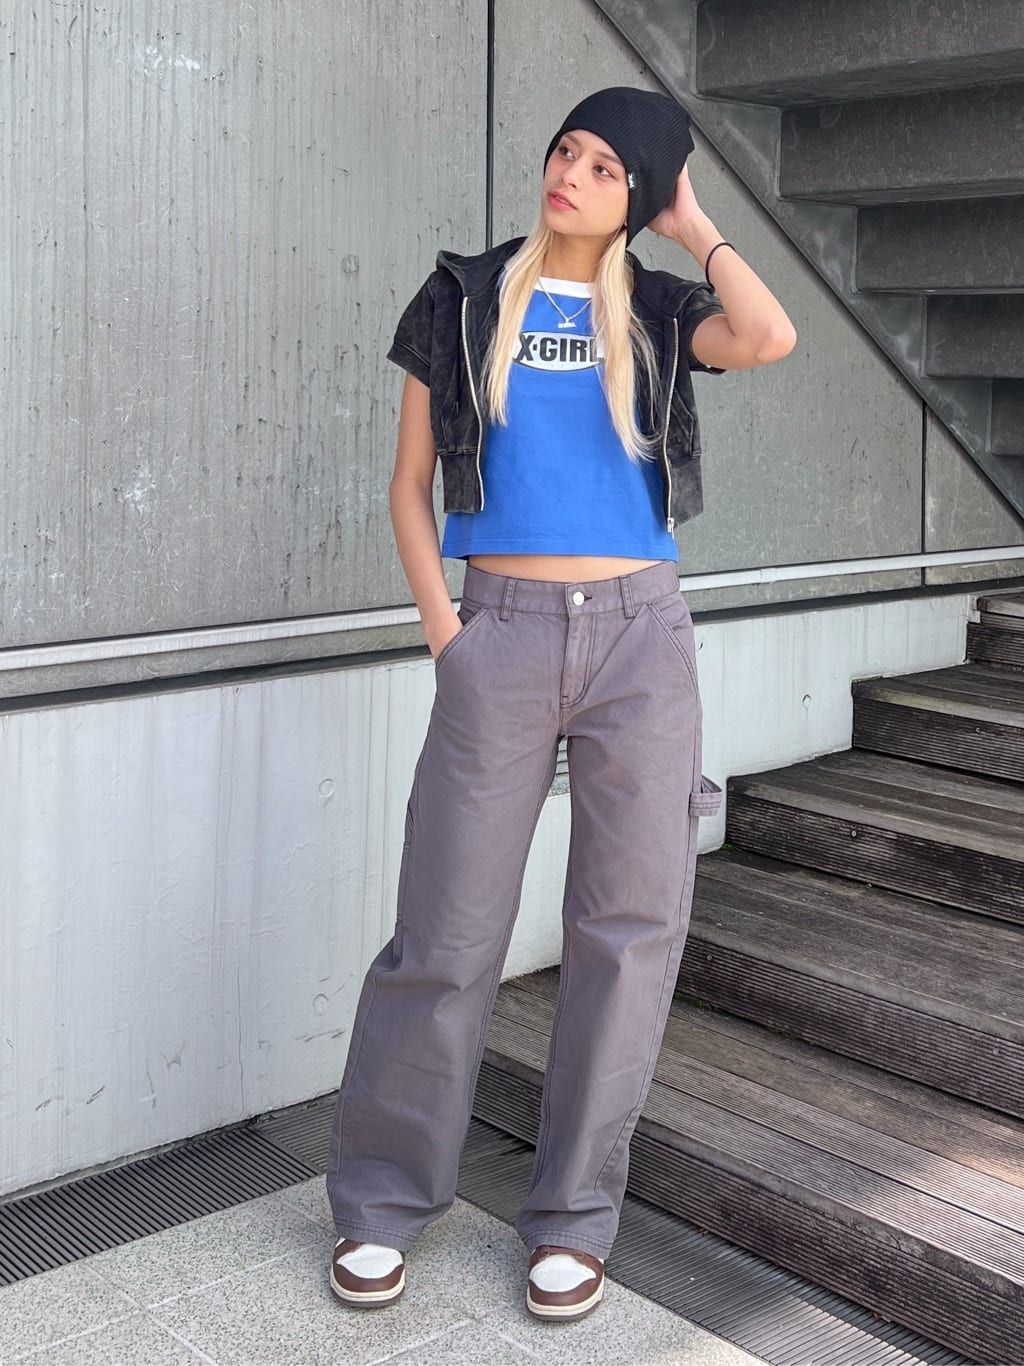 X-girlのGLITTER OVAL LOGO S/S BABY TEE Tシャツ X-girlを使ったコーディネートを紹介します。｜Rakuten Fashion(楽天ファッション／旧楽天ブランドアベニュー)3908274